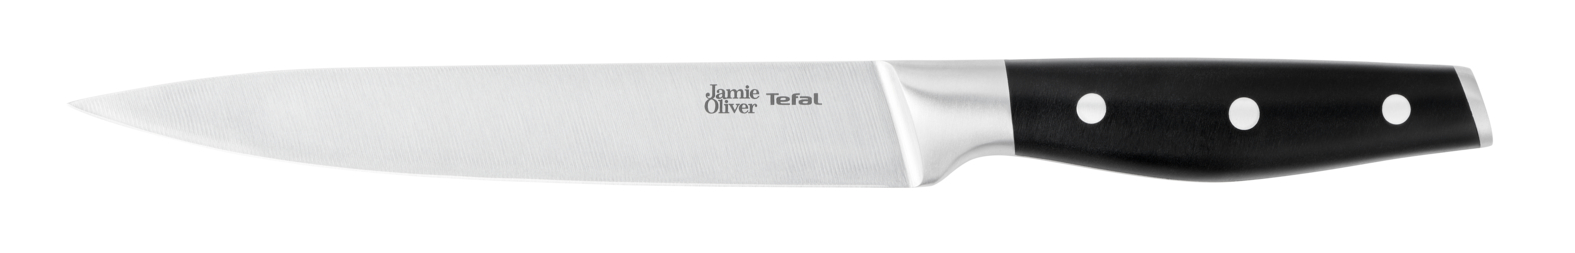 Универсальный нож Jamie Oliver 20 cм K2670244 нож для чистки овощей jamie oliver 9 cм k2671144